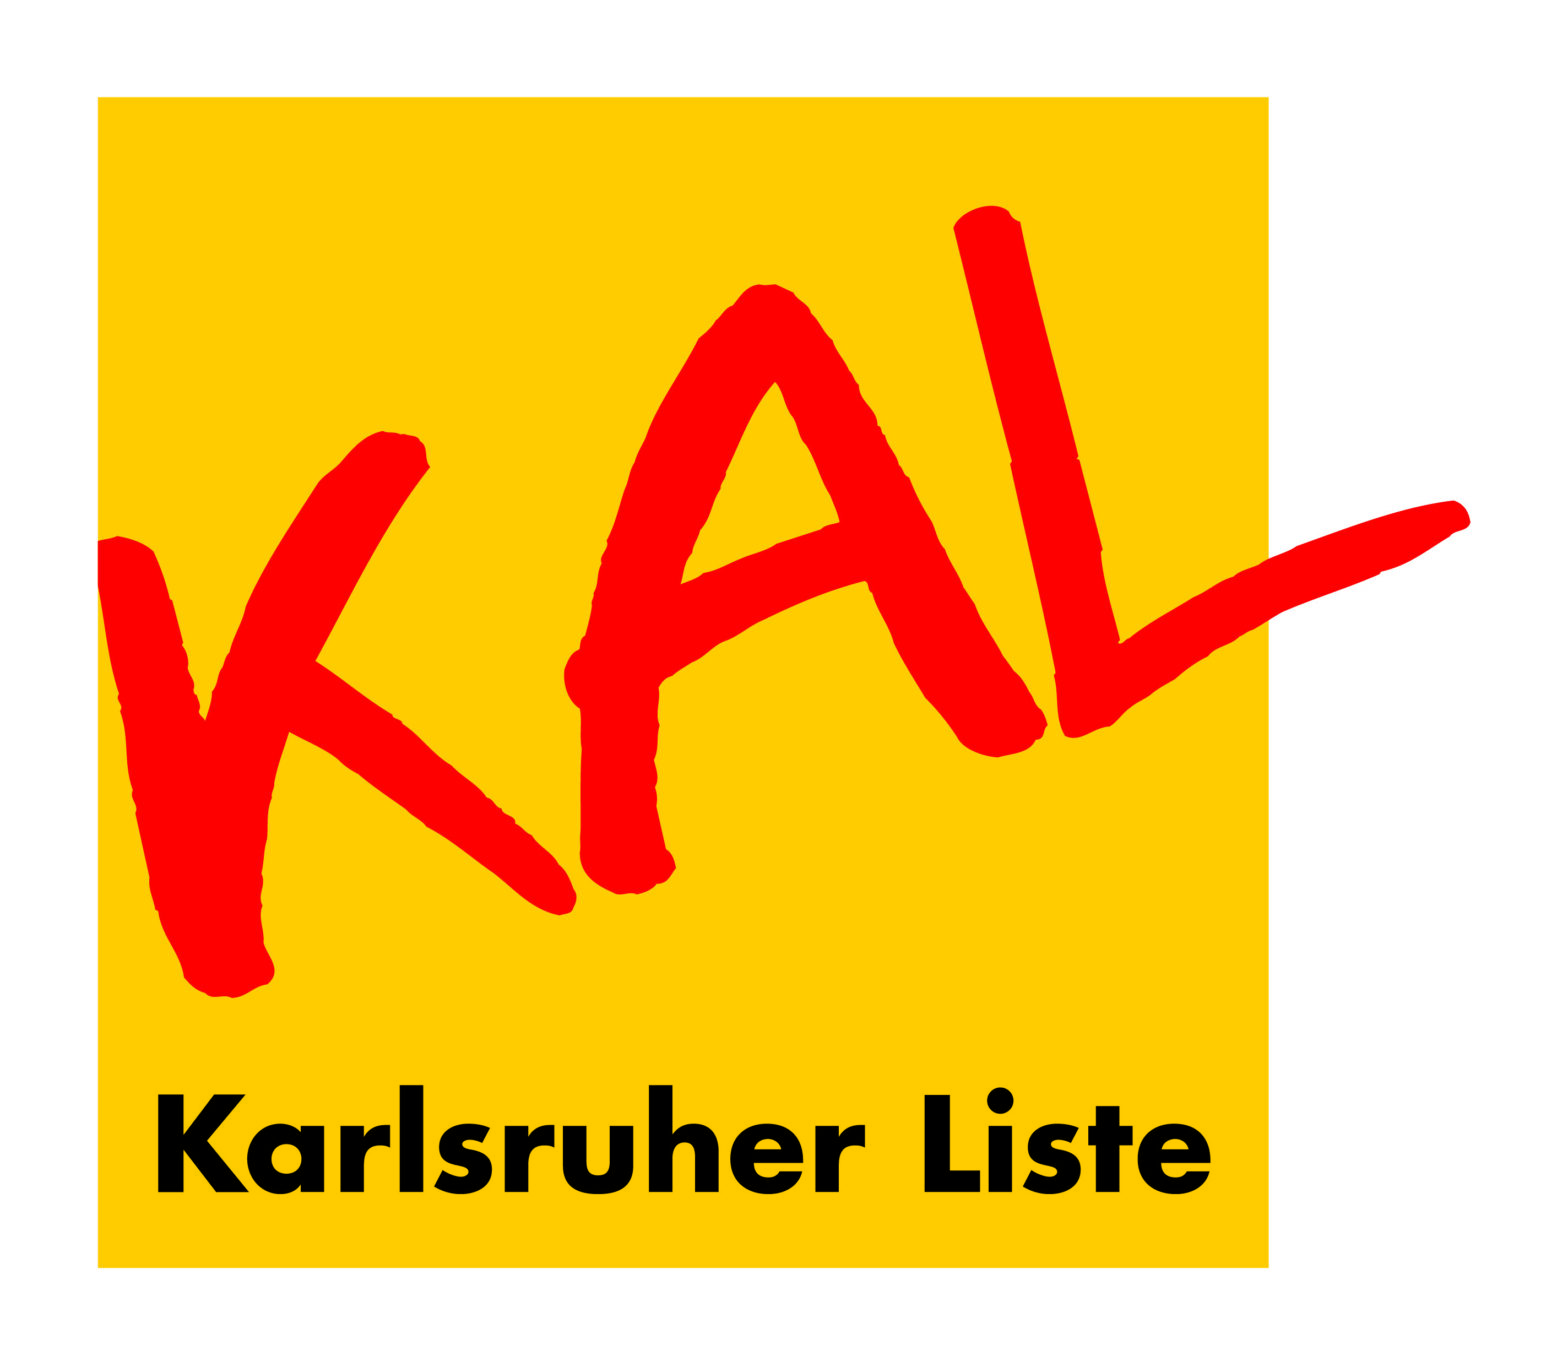 Karlsruher Liste (KAL)